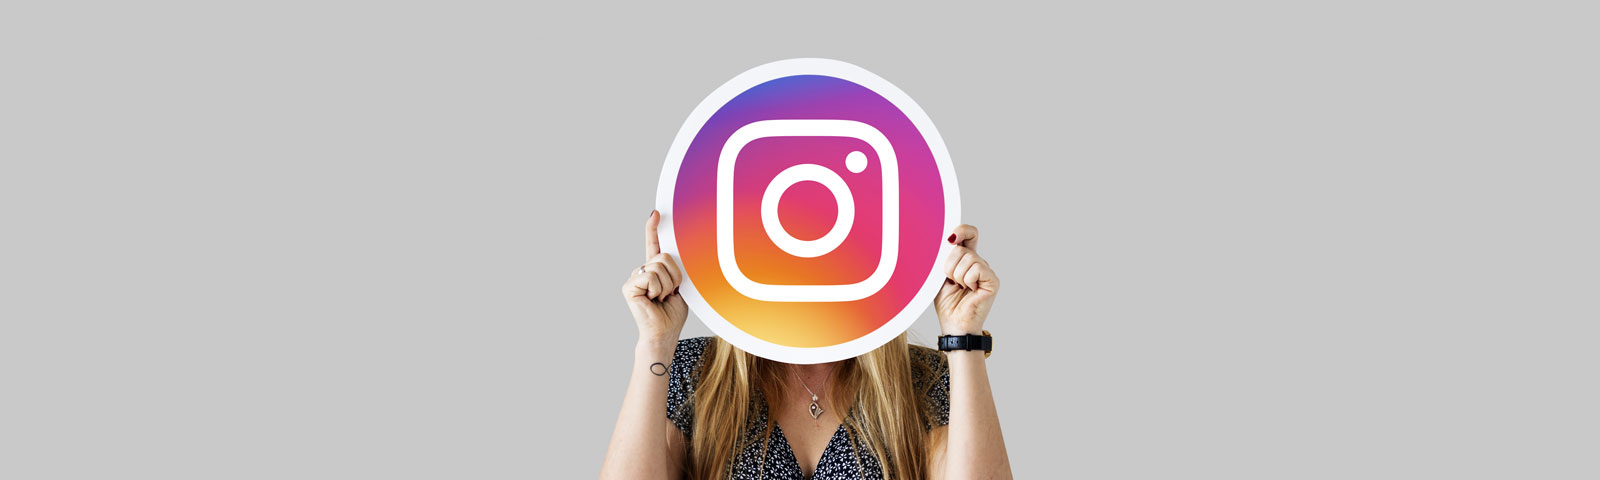 Ventajas e inconvenientes de Instagram a empresas